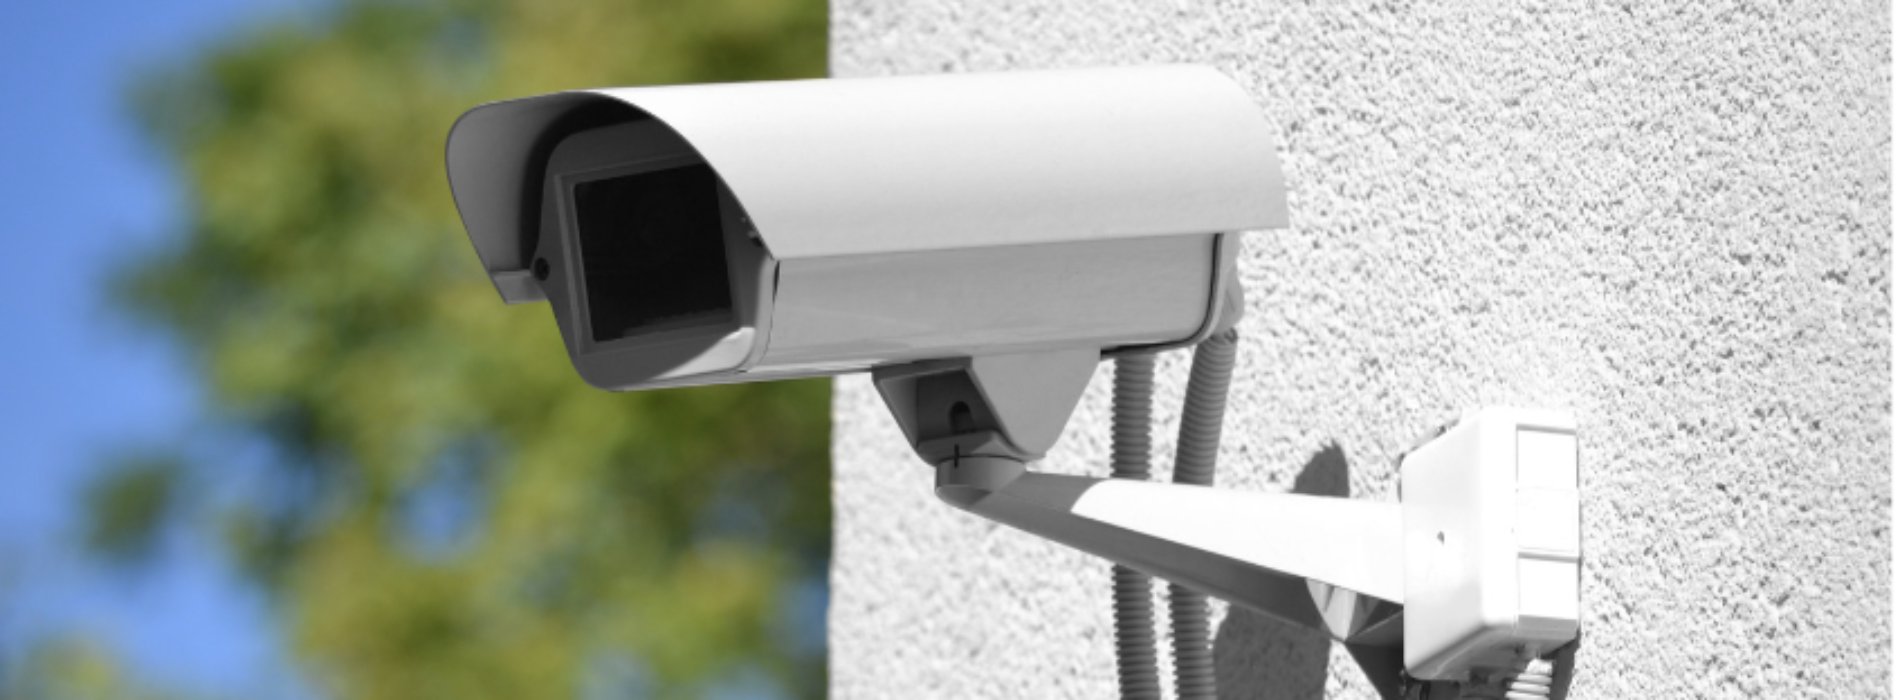 Sicurezza urbana, in arrivo sistemi di videosorveglianza